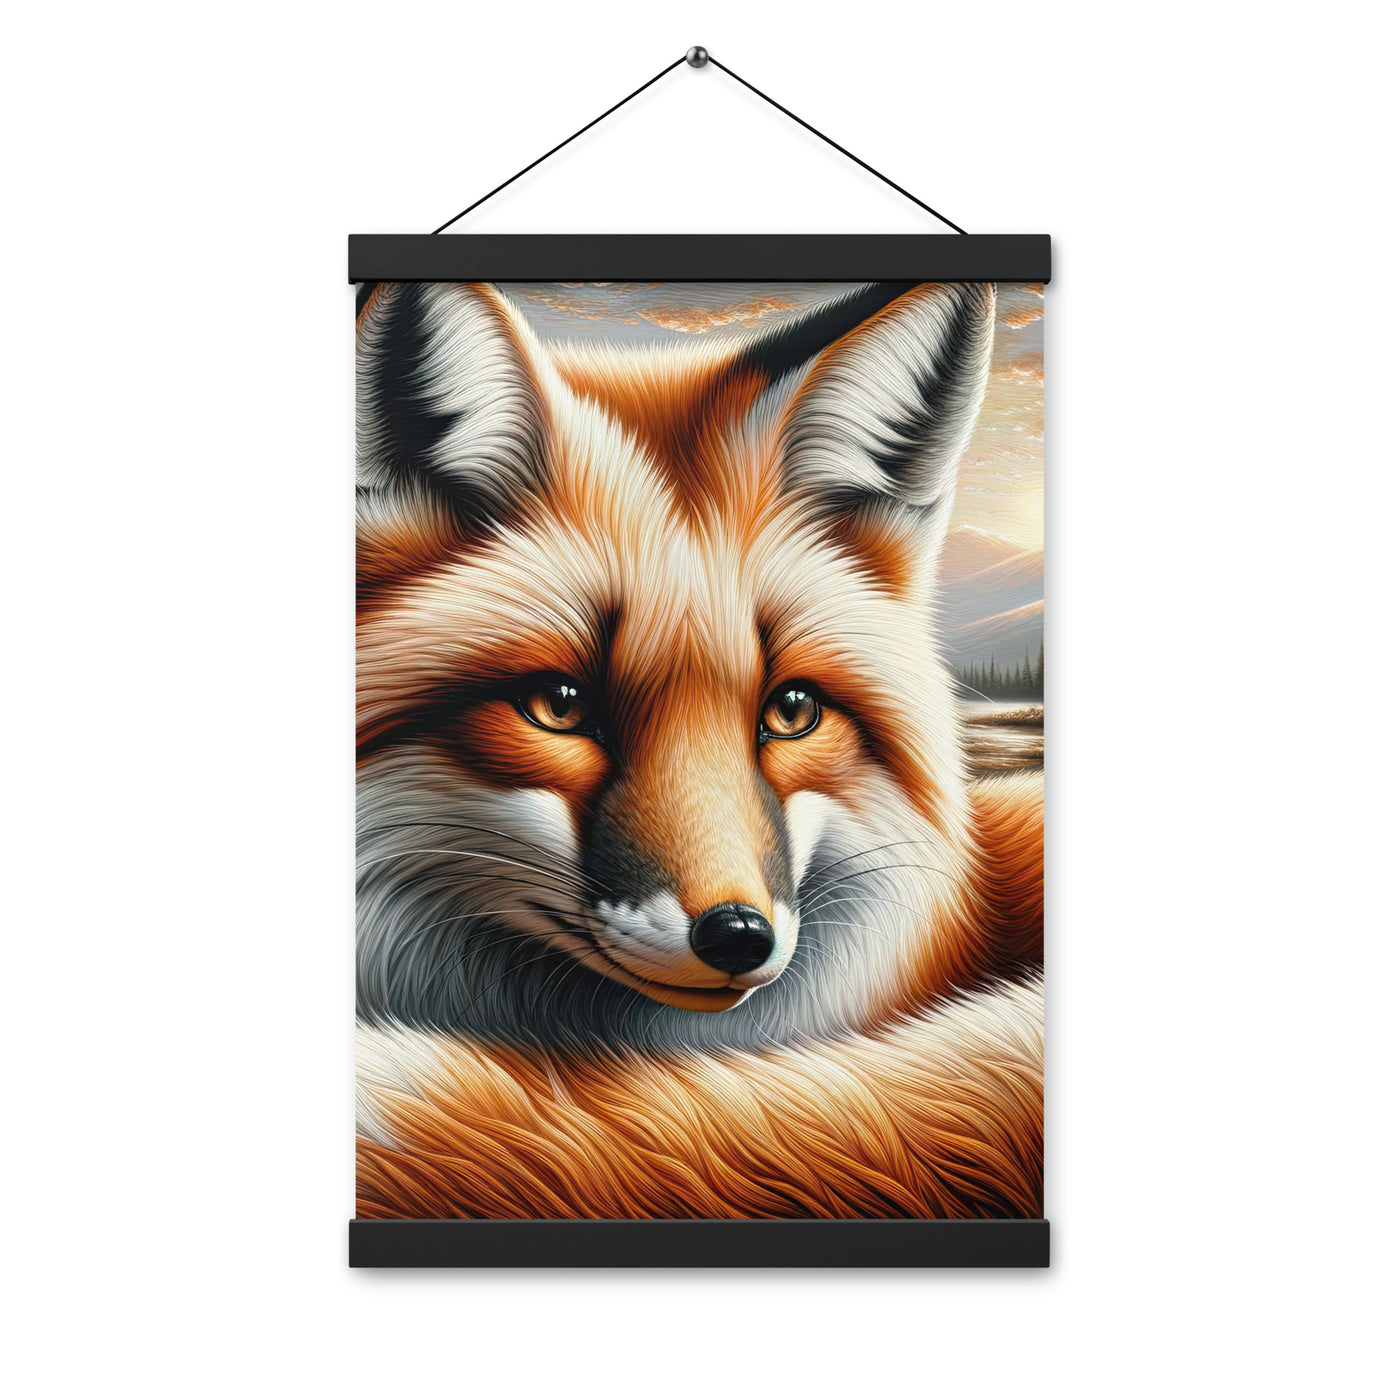 Ölgemälde eines nachdenklichen Fuchses mit weisem Blick - Premium Poster mit Aufhängung camping xxx yyy zzz 30.5 x 45.7 cm